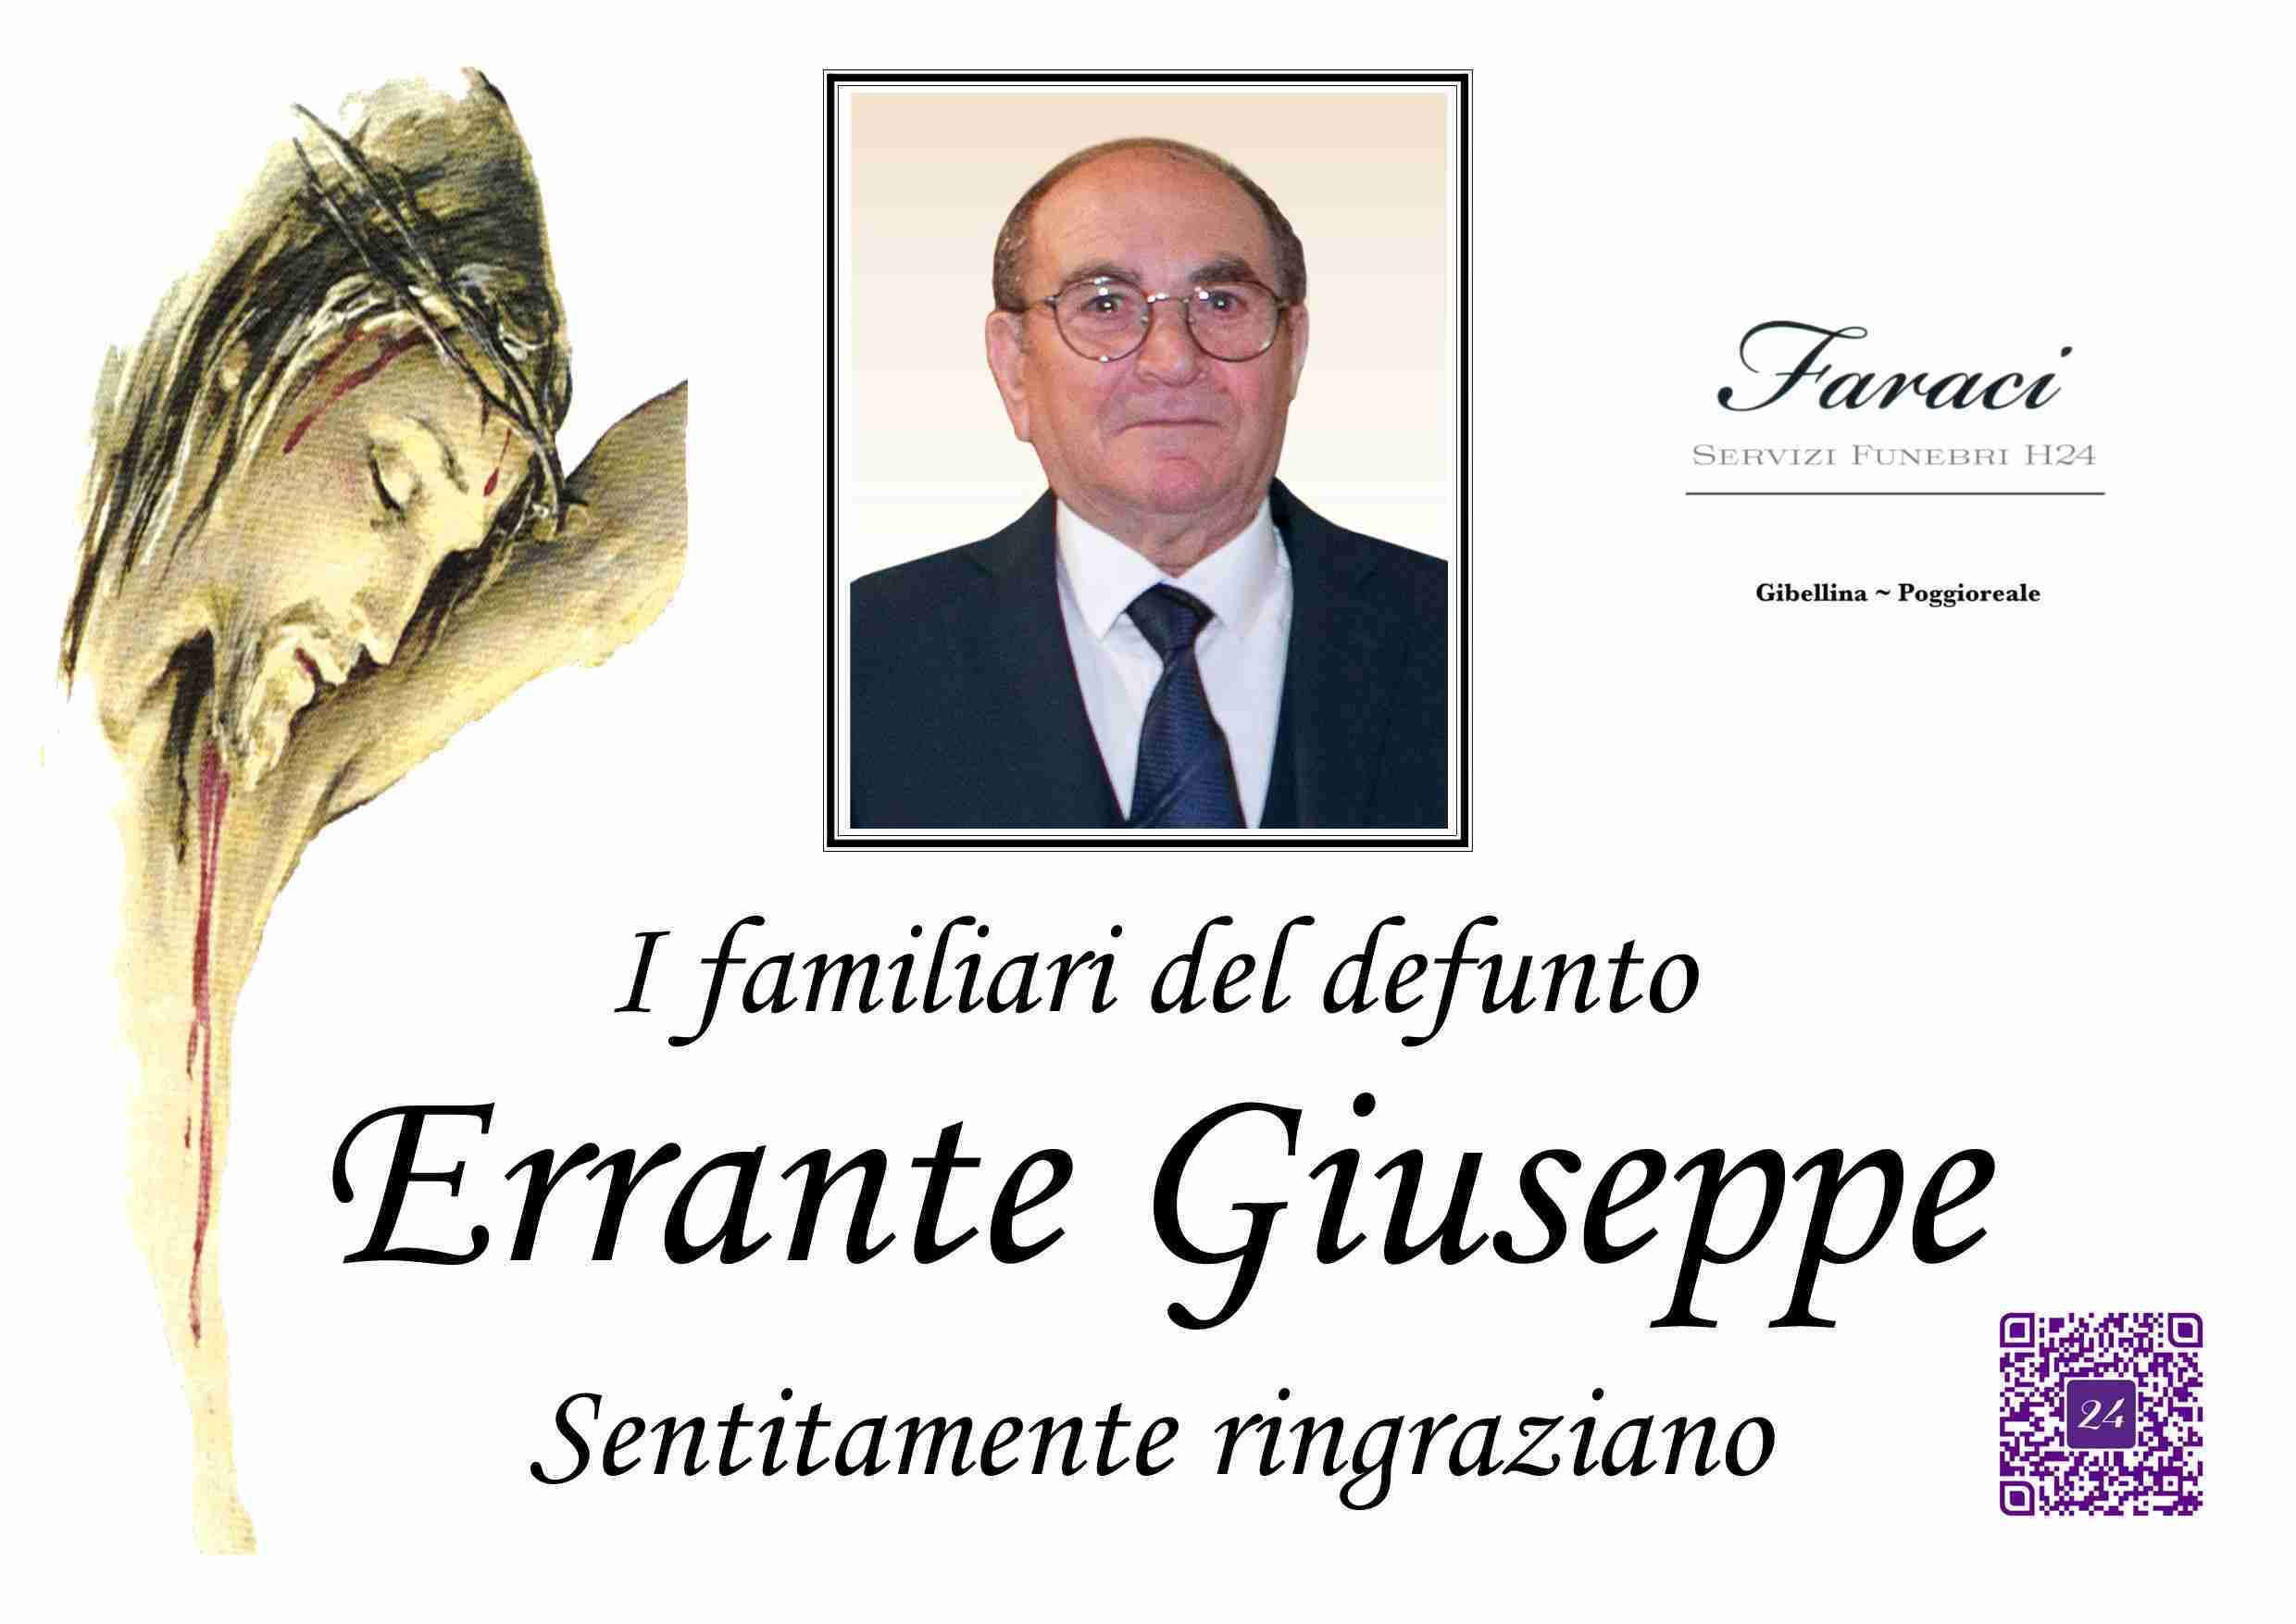 Giuseppe Errante